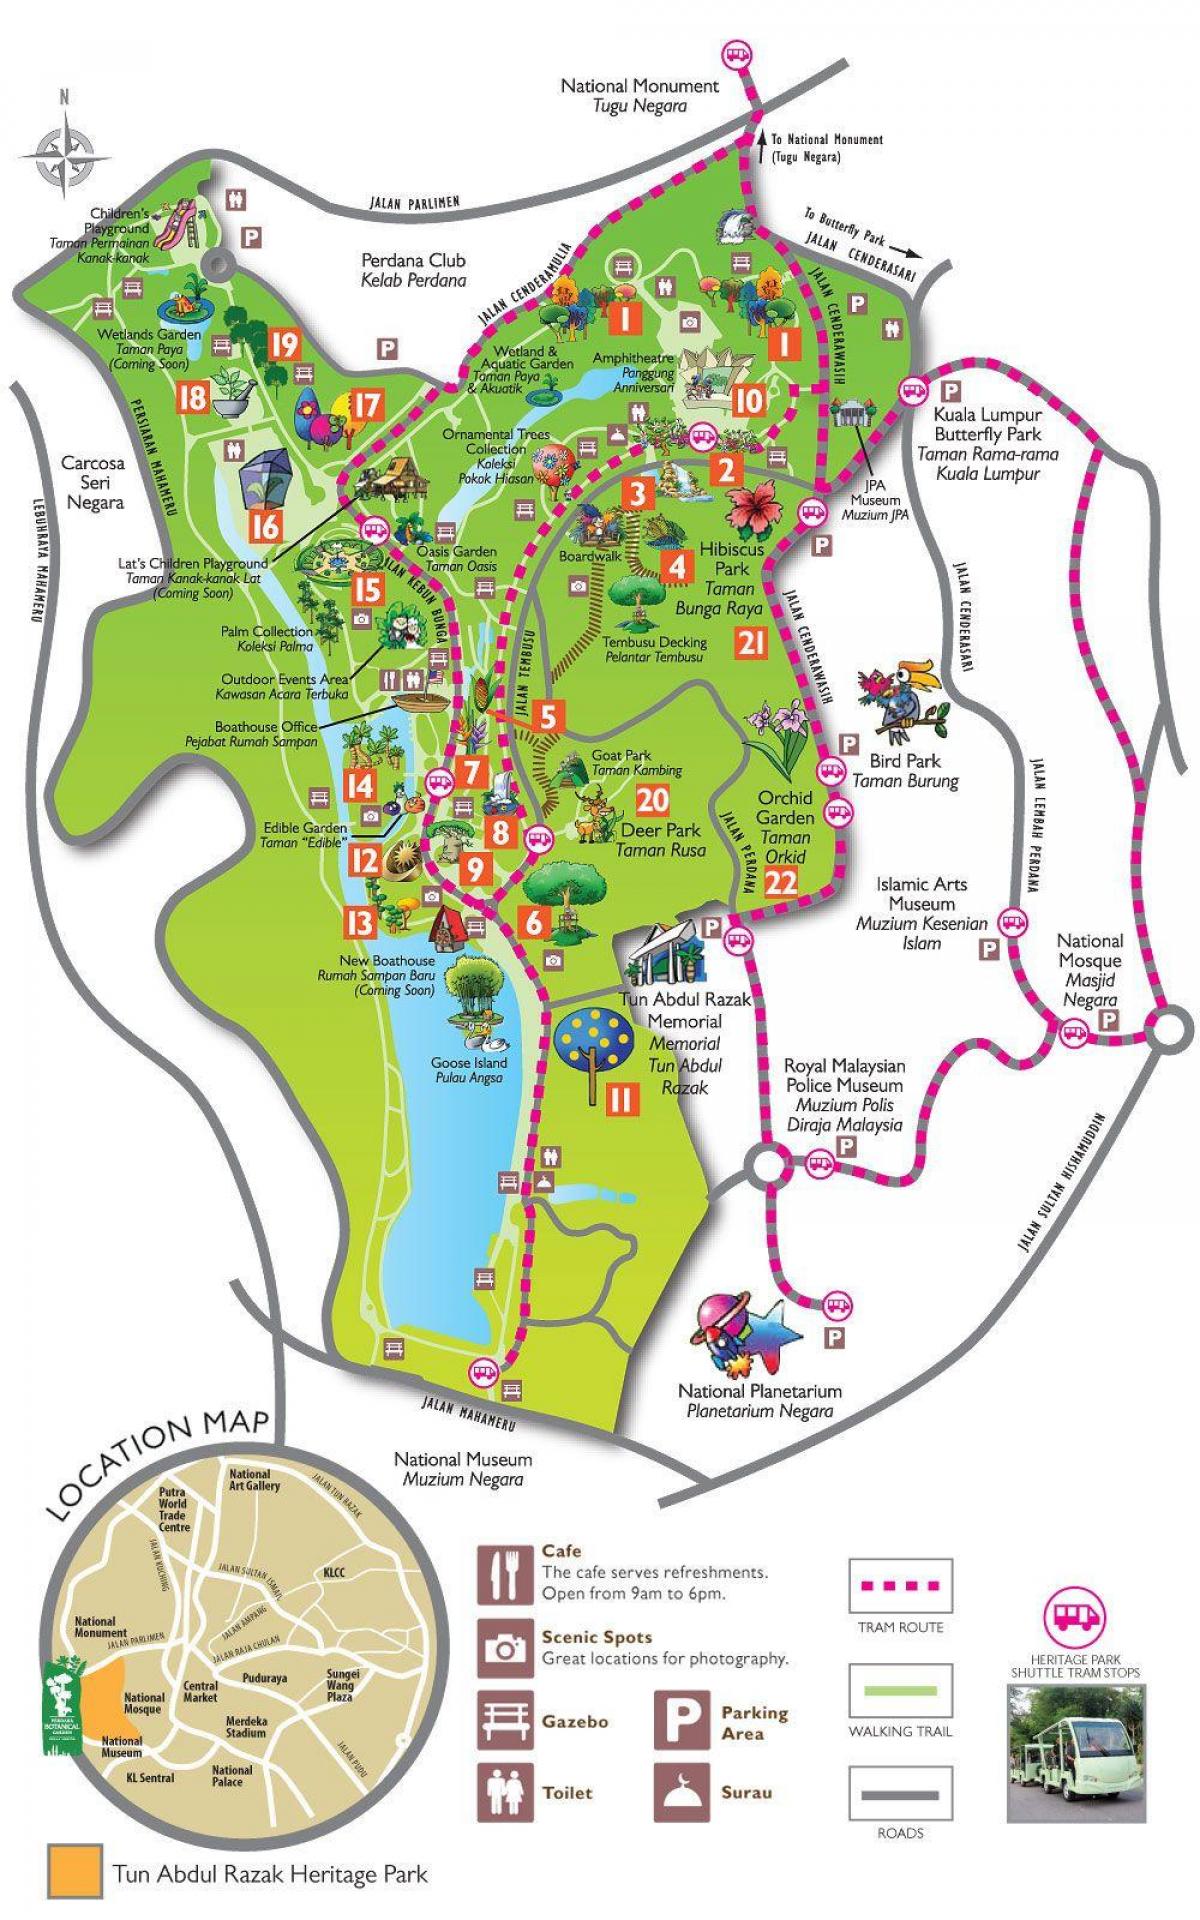 Mappa di perdana giardino botanico